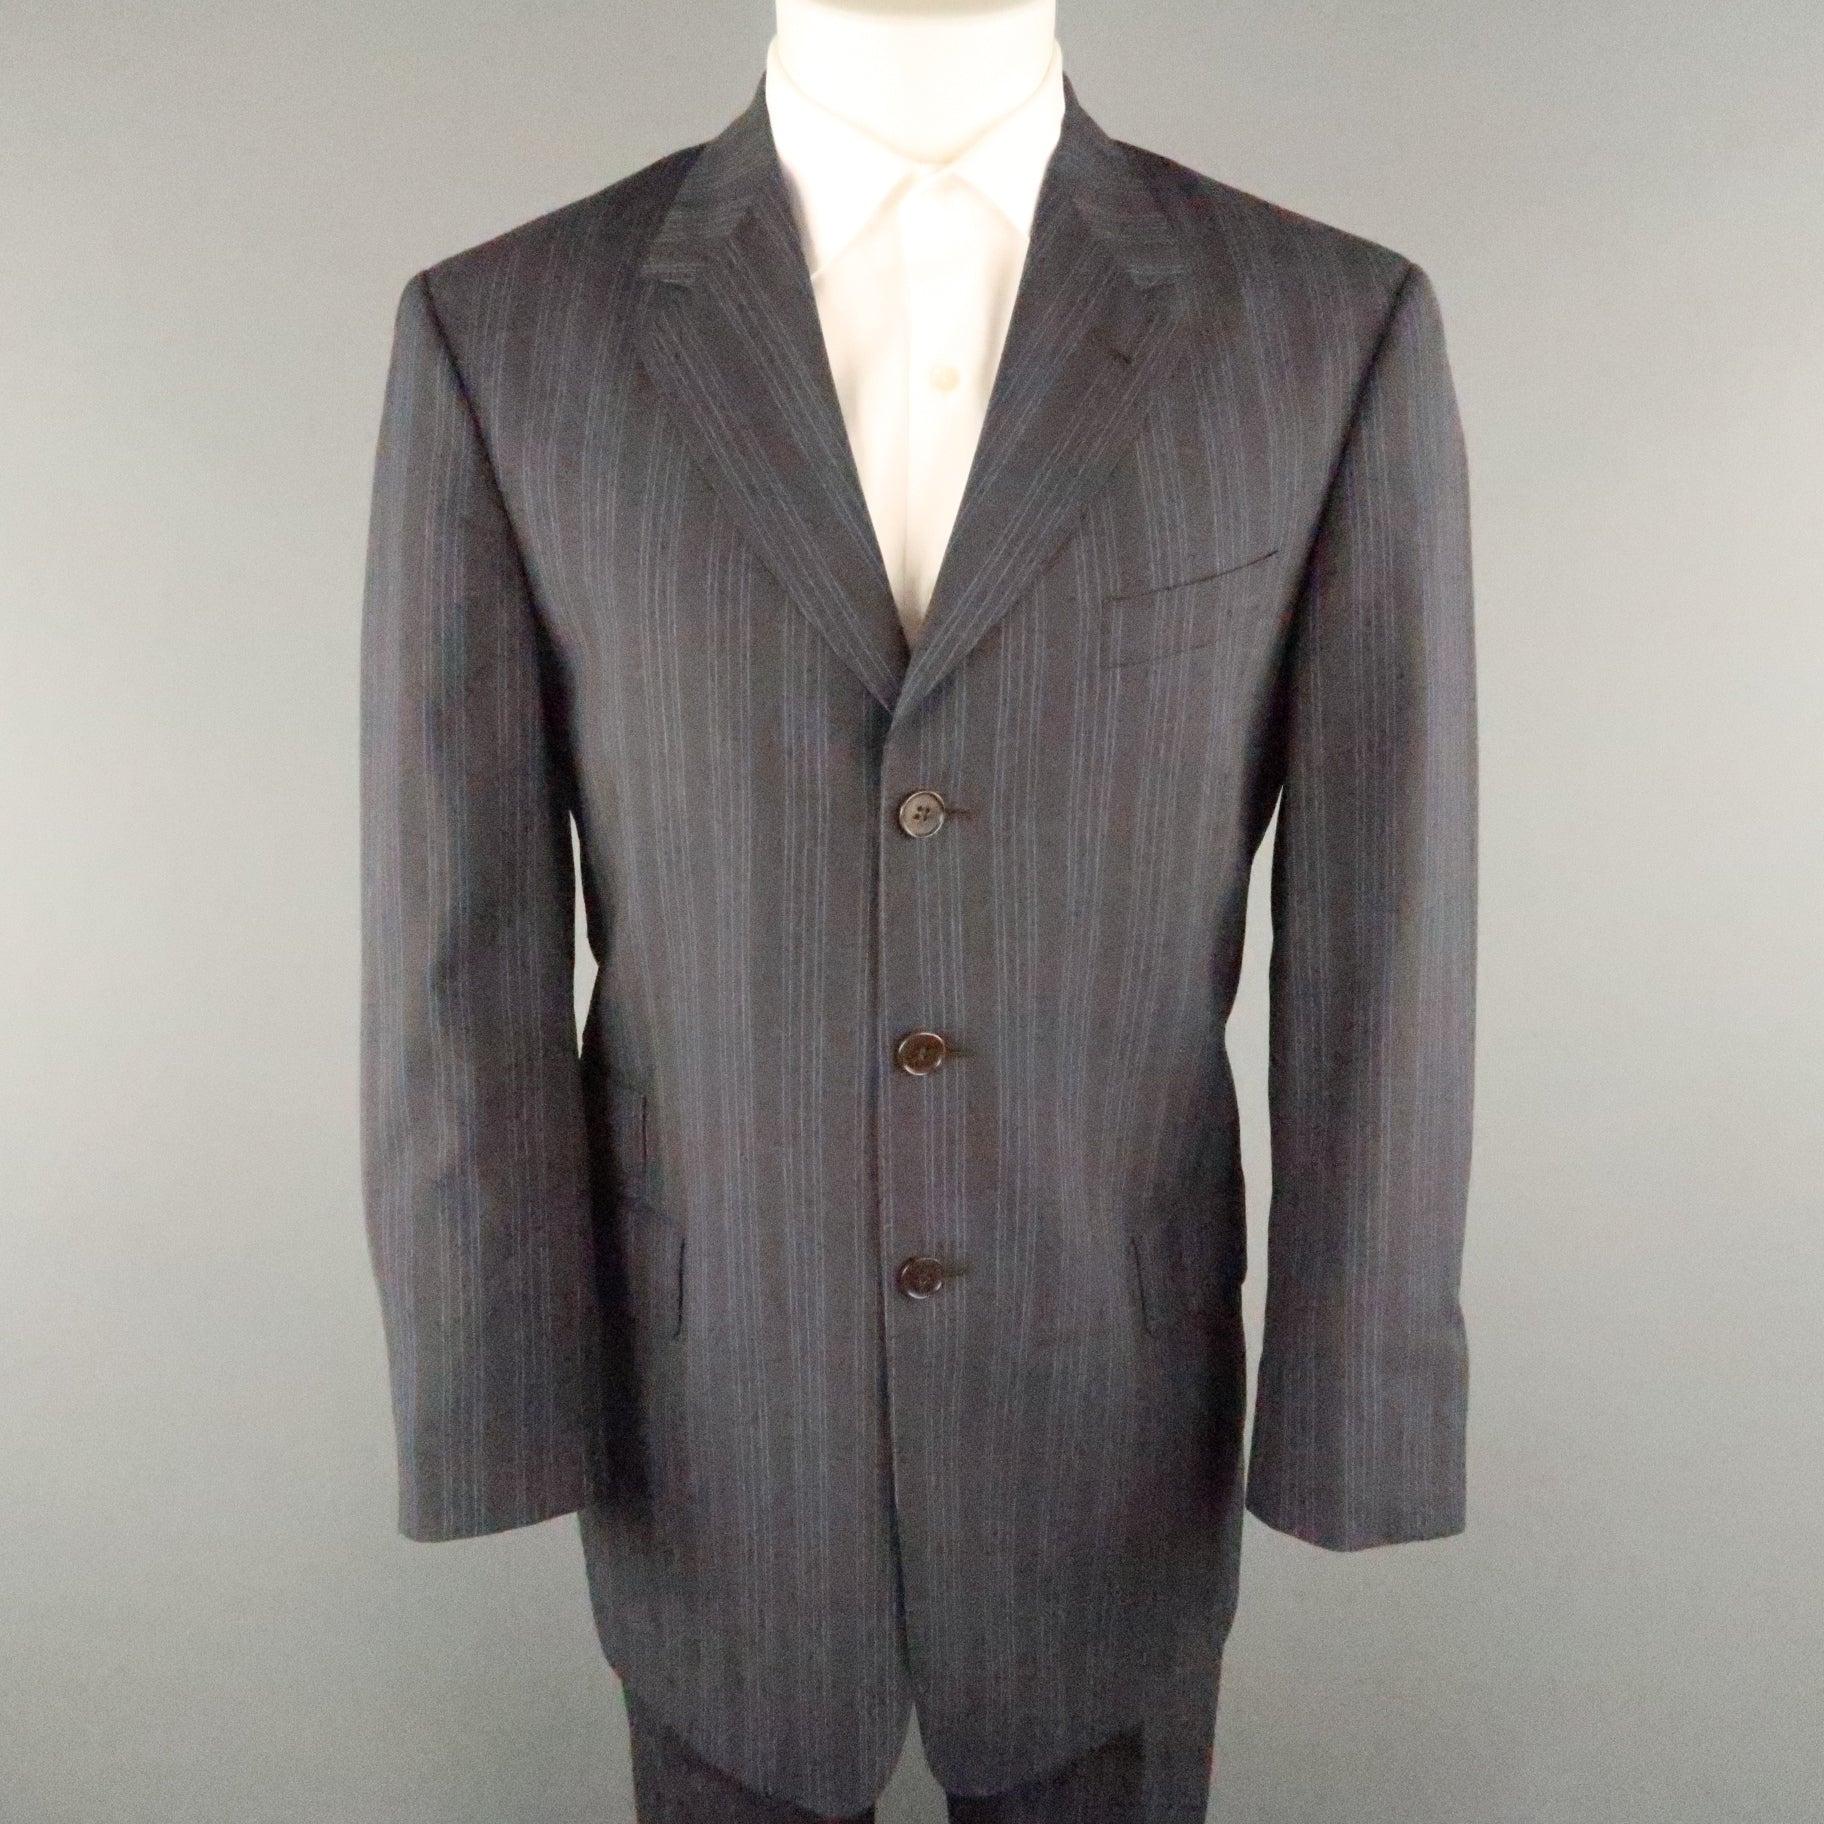 Le costume PAUL SMITH est proposé en viscose à rayures grises et bleues. Il présente un revers à cran, des poches à rabat, une fermeture à trois boutons et un pantalon assorti à devant plat. Fait en Italie. 
Excellent état d'origine.
 

Marqué :  